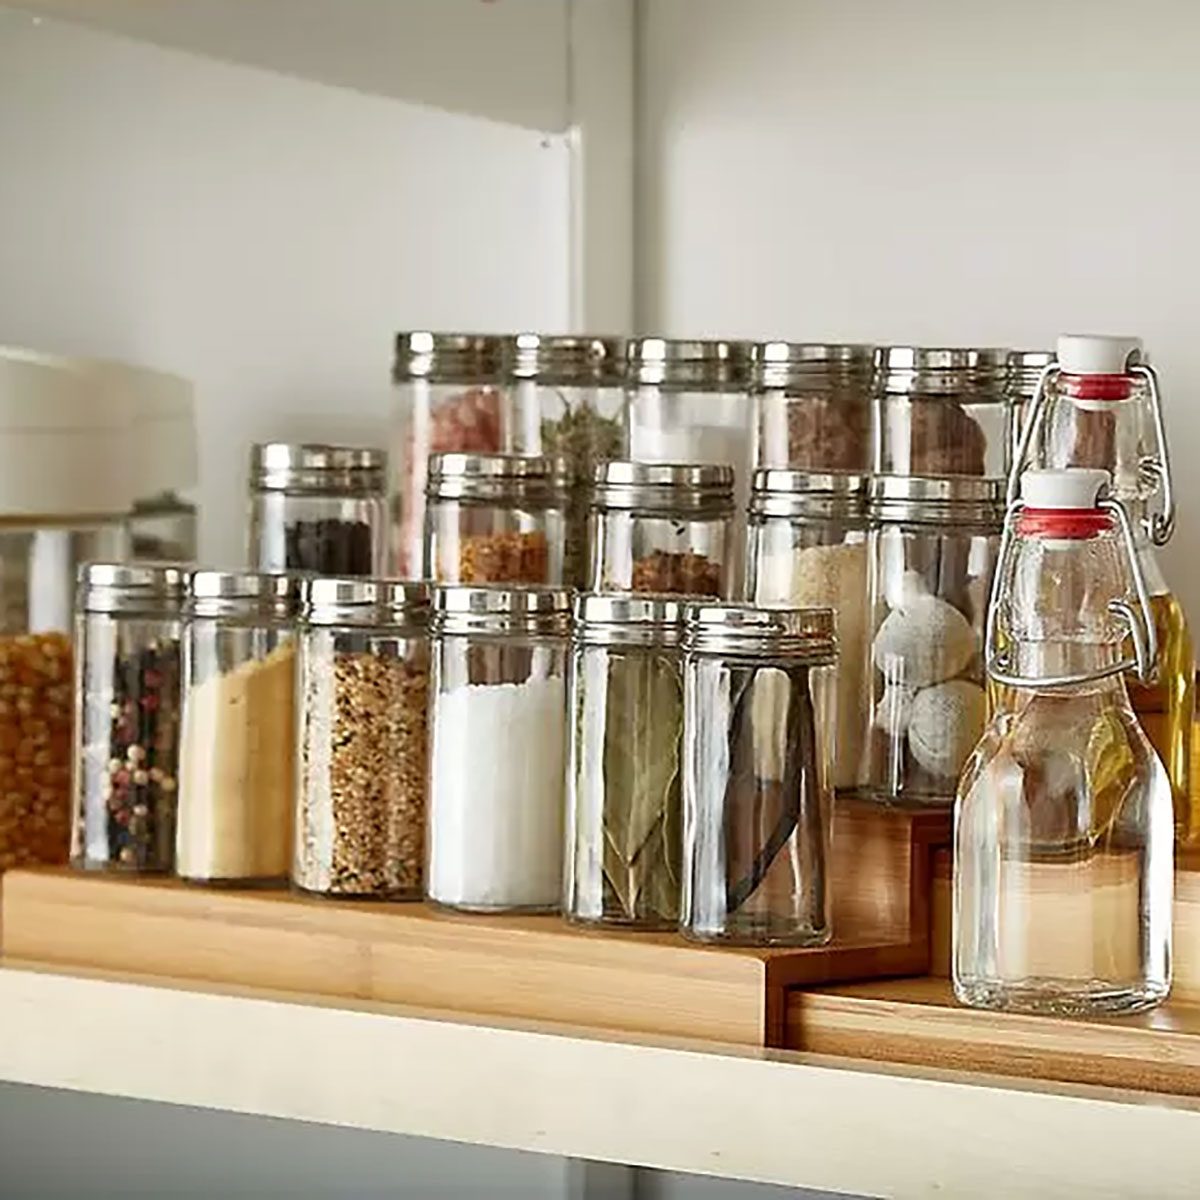 15 Spice Storage Ideas That Make So Much Sense In Your Kitchen